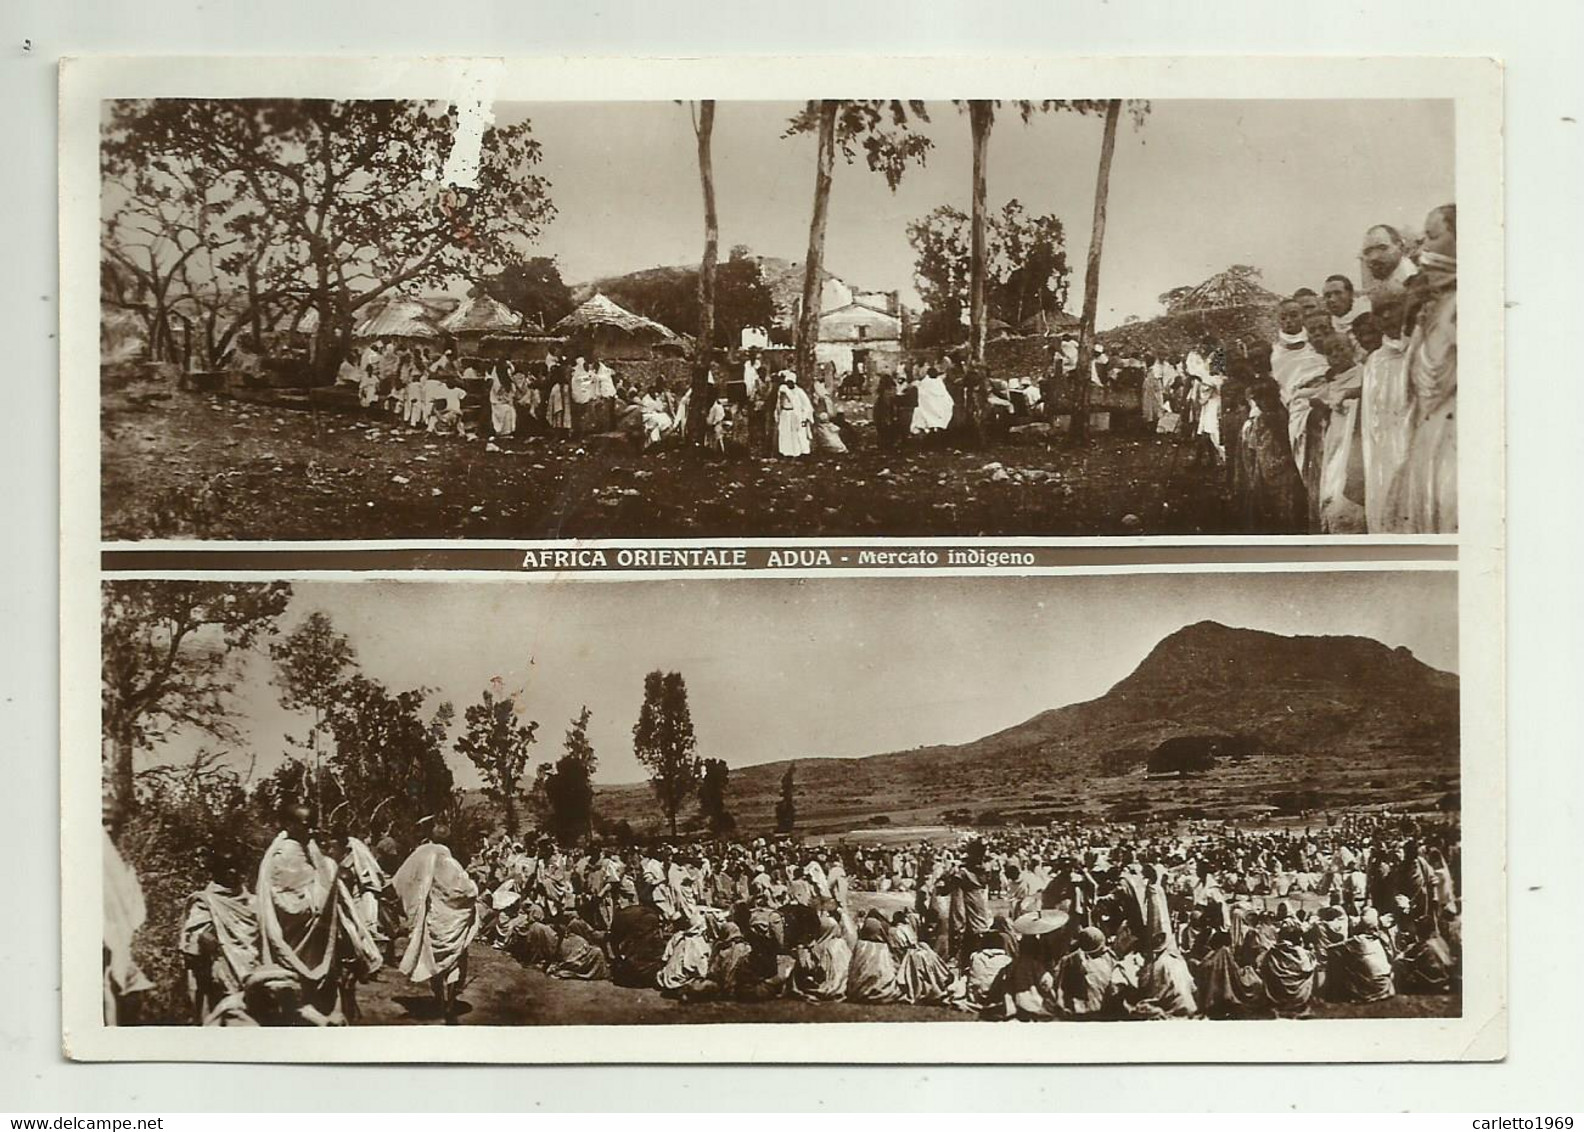 AFRICA ORIENTALE ADUA - MERCATO INDIGENO 1938 - NV FG ( SEGNO PARTE SX ) - Ethiopia